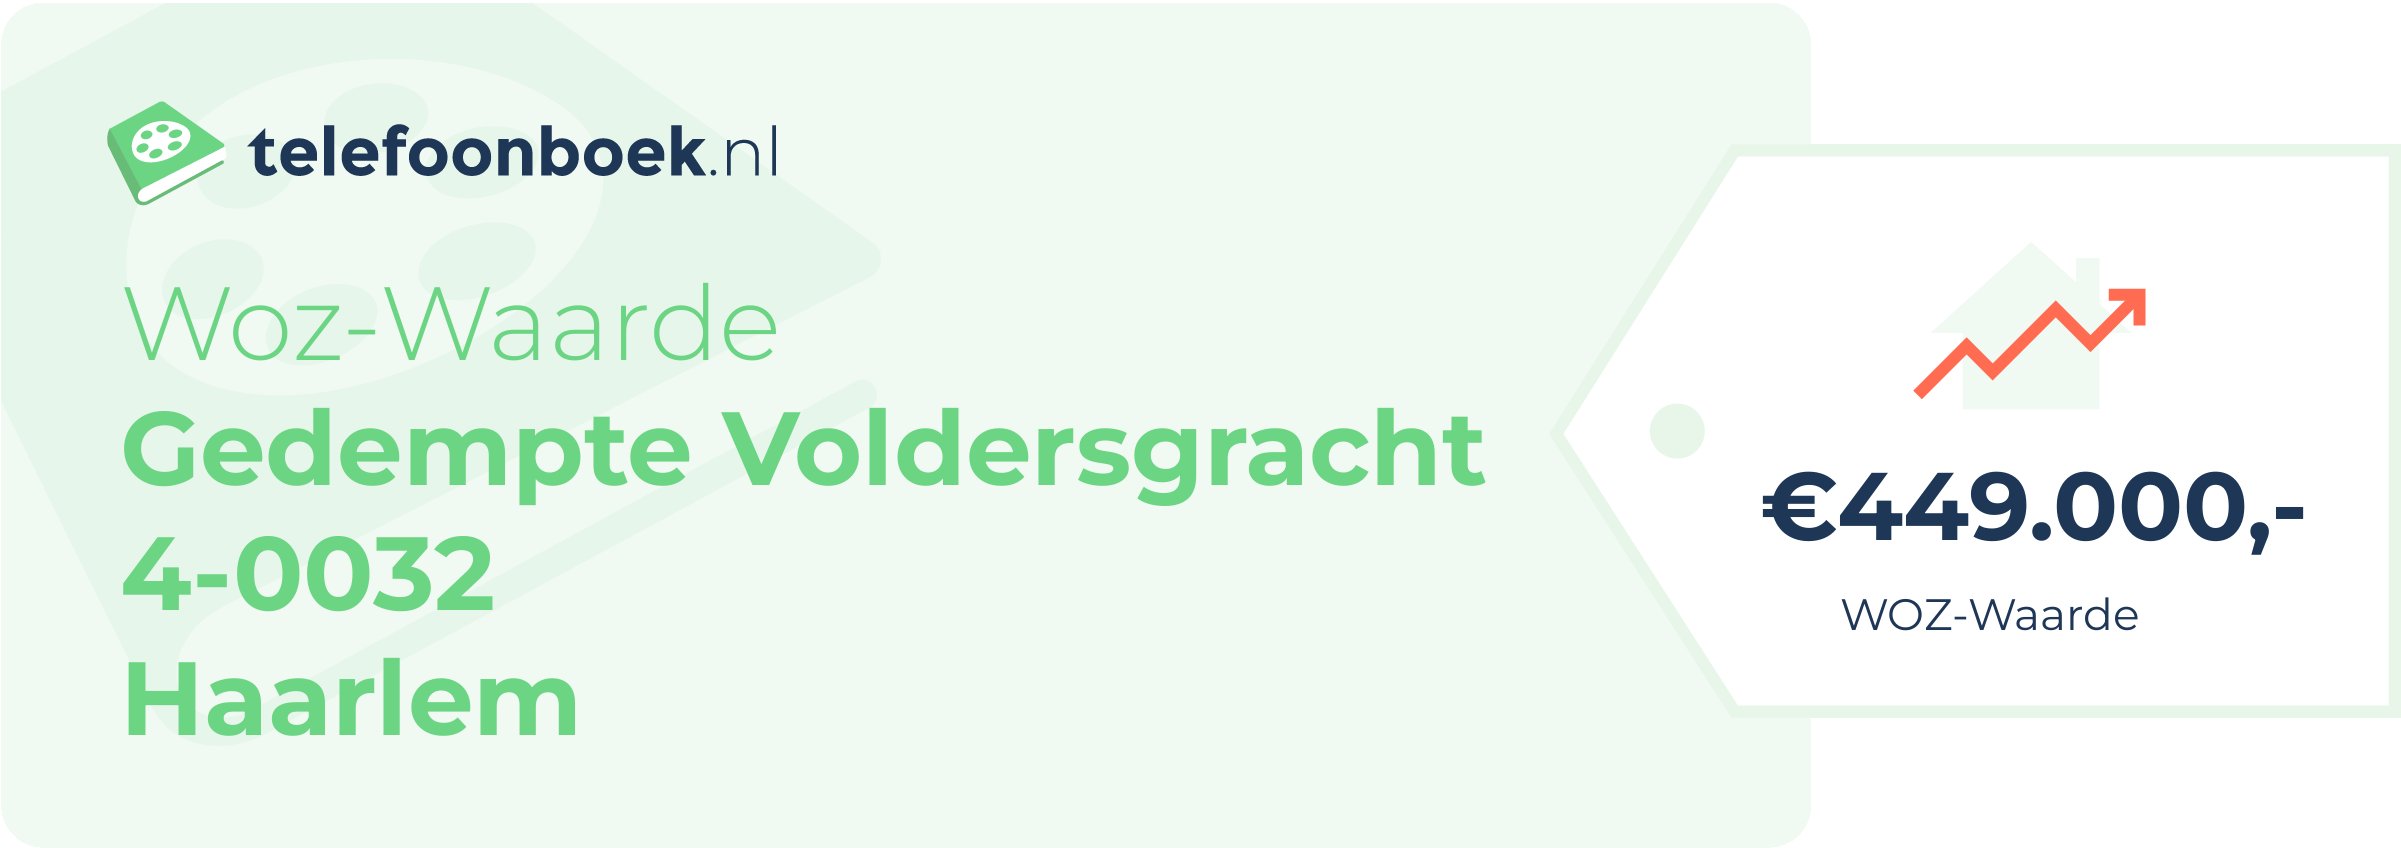 WOZ-waarde Gedempte Voldersgracht 4-0032 Haarlem